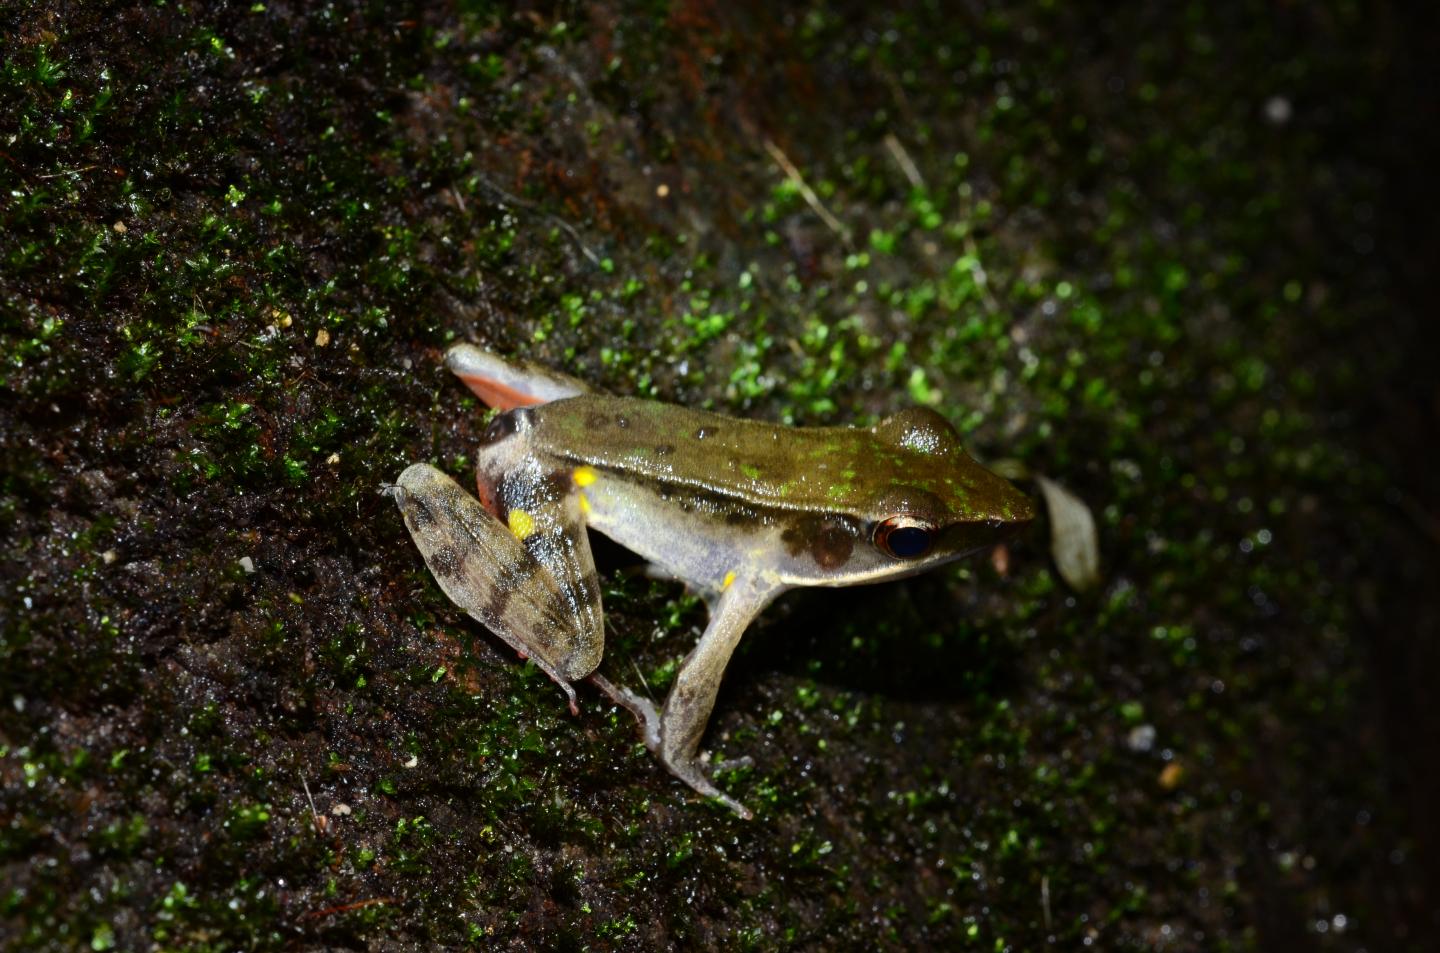 Male Warszewitsch's Frog